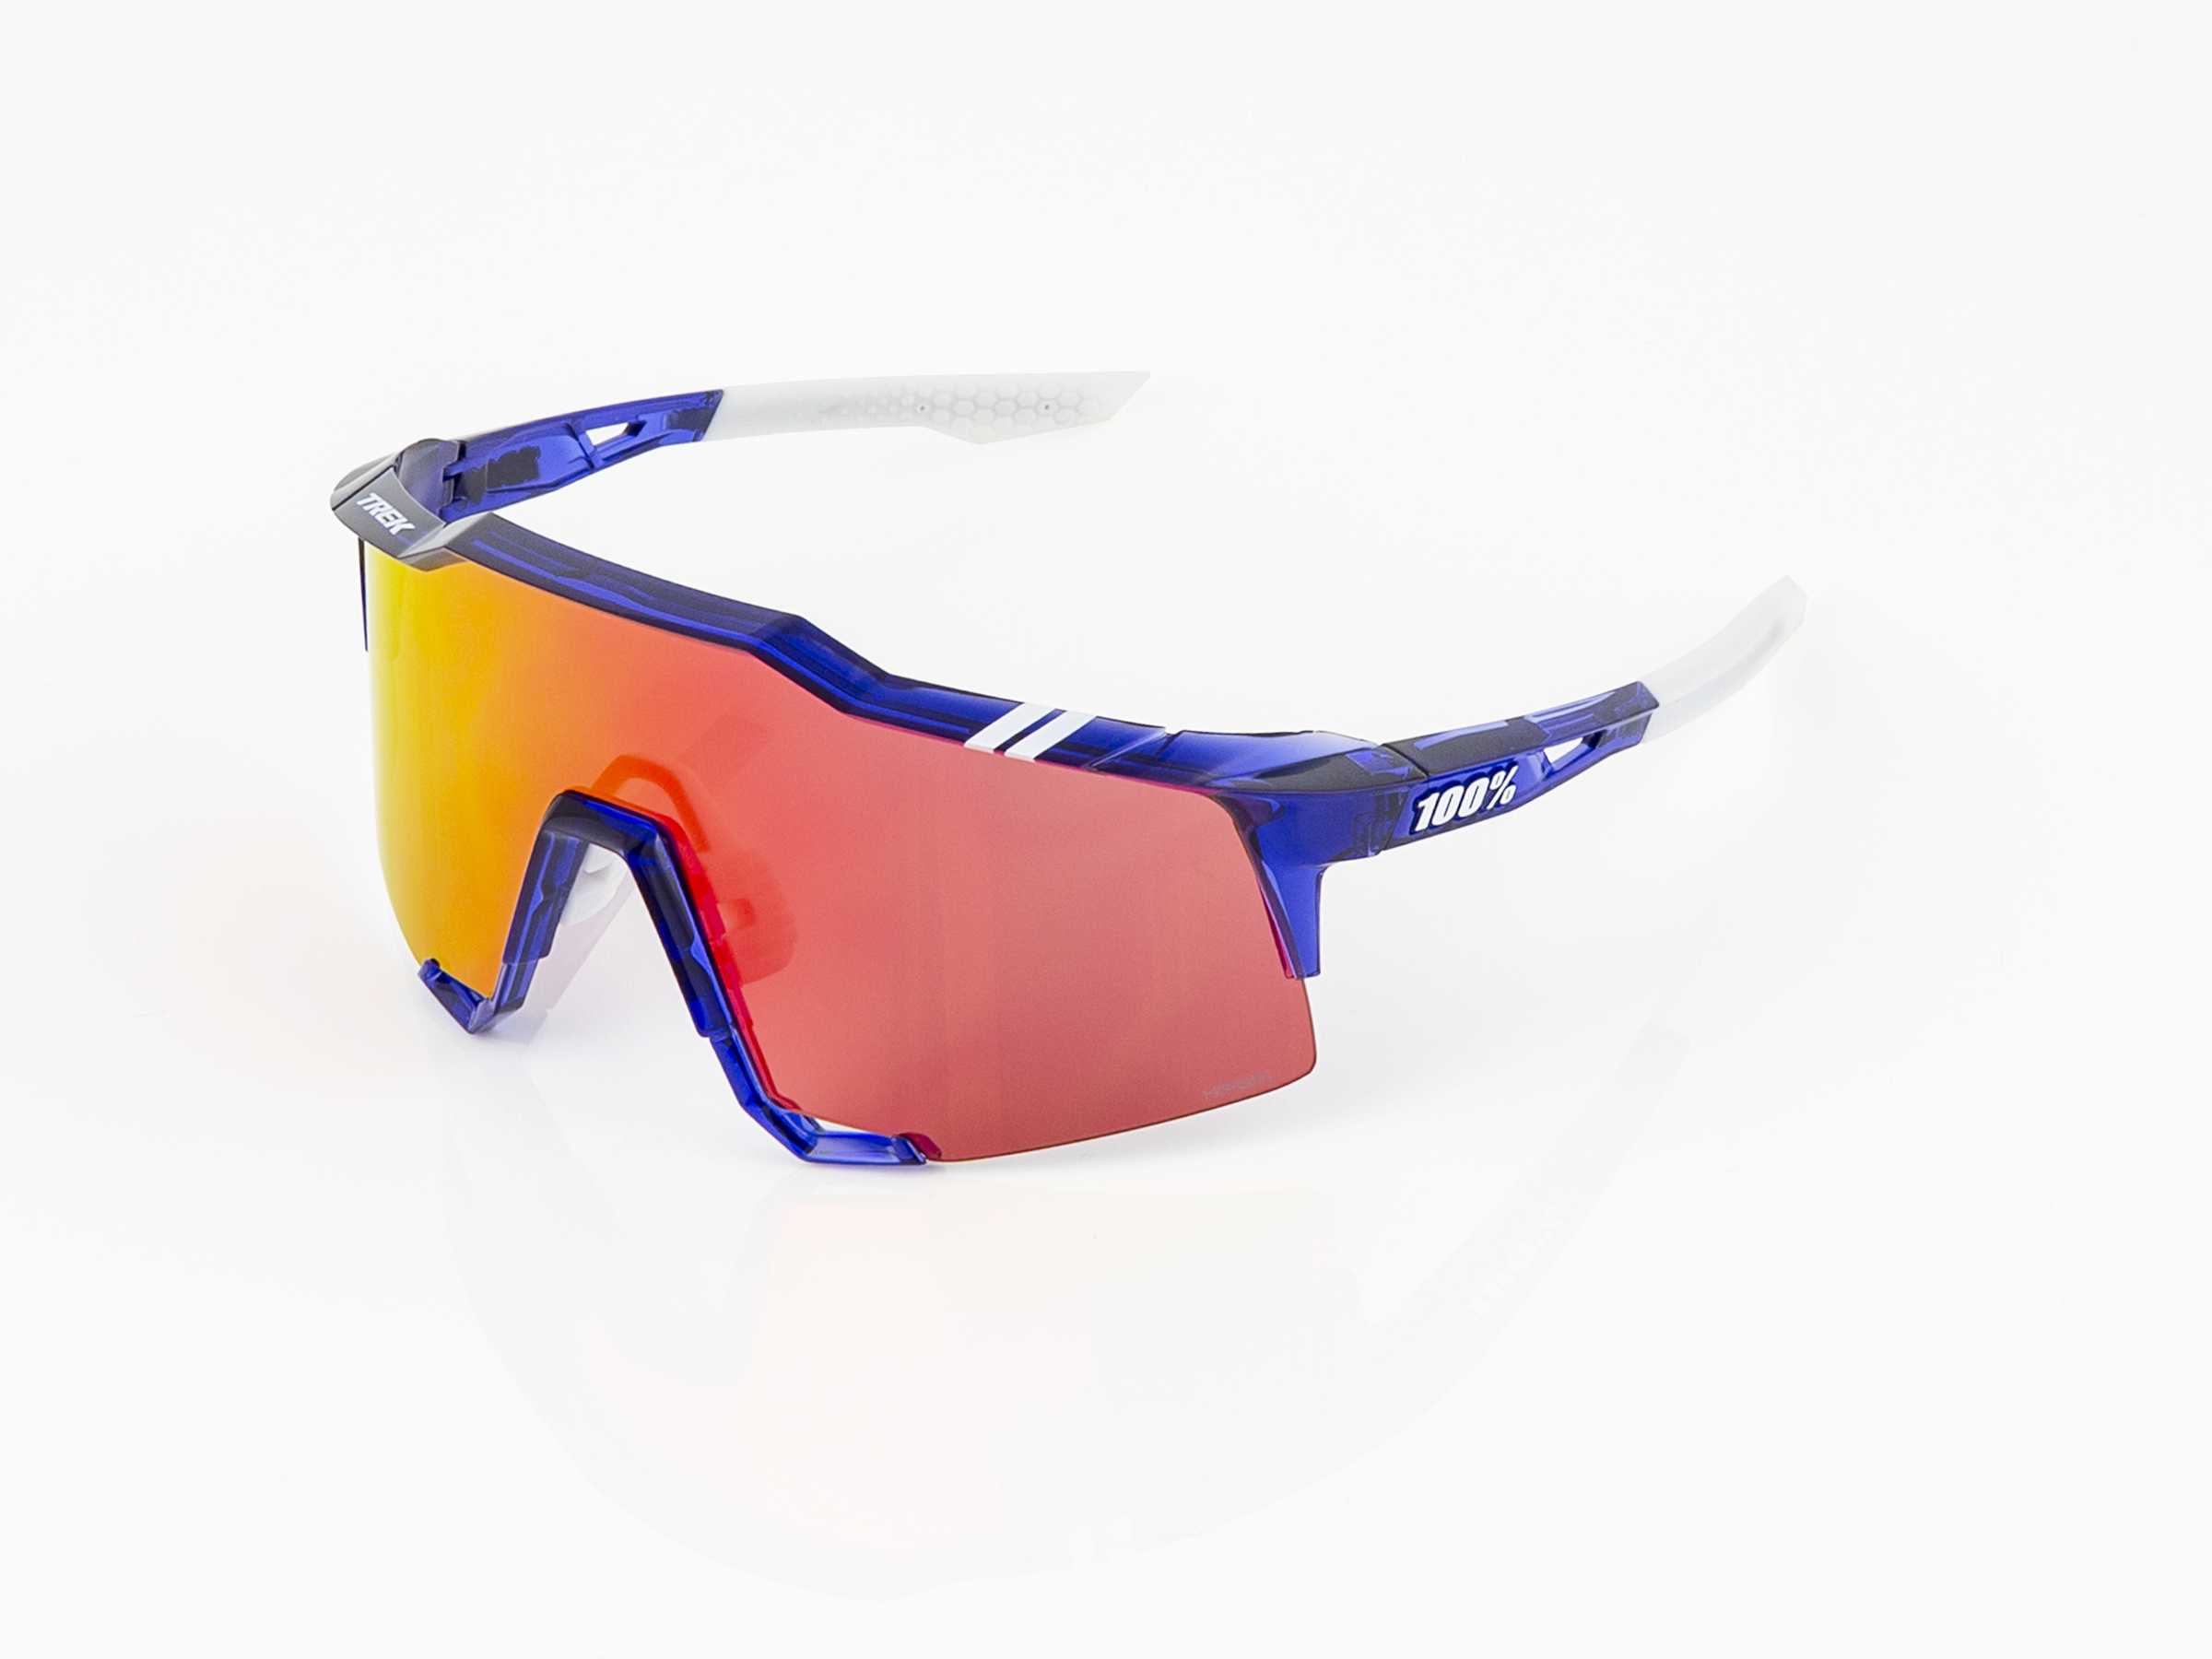 Sluneční brýle 100% Speedcraft se skly HiPER, týmová edice Trek MODRÁ/ČERVENÁ One size